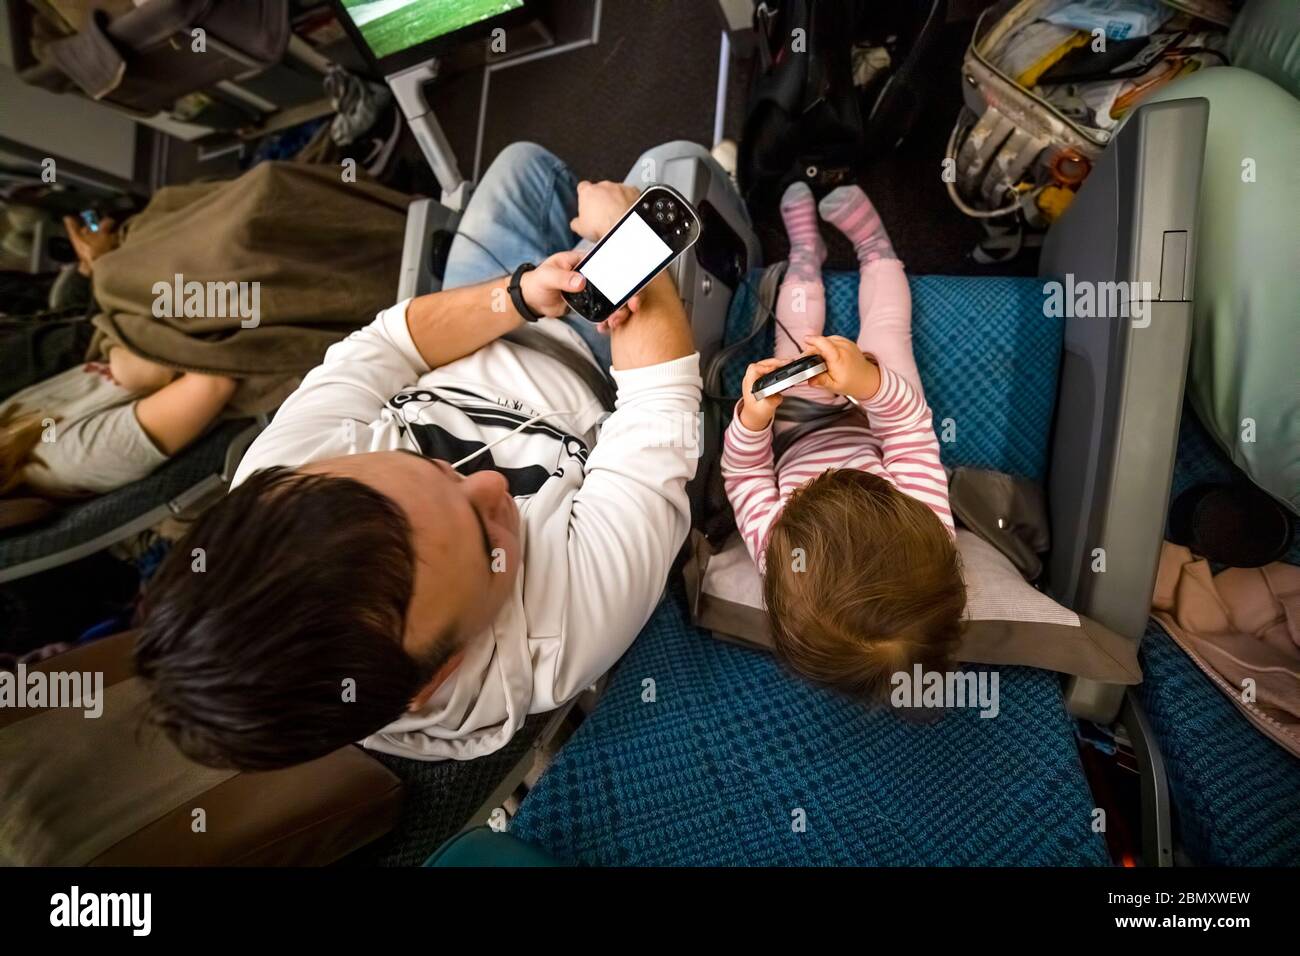 Unterhaltung an Bord des Flugzeugs. Papa und Baby sitzen im Flugzeug in Sesseln und haben Spaß beim Spielen im Multimediasystem Stockfoto